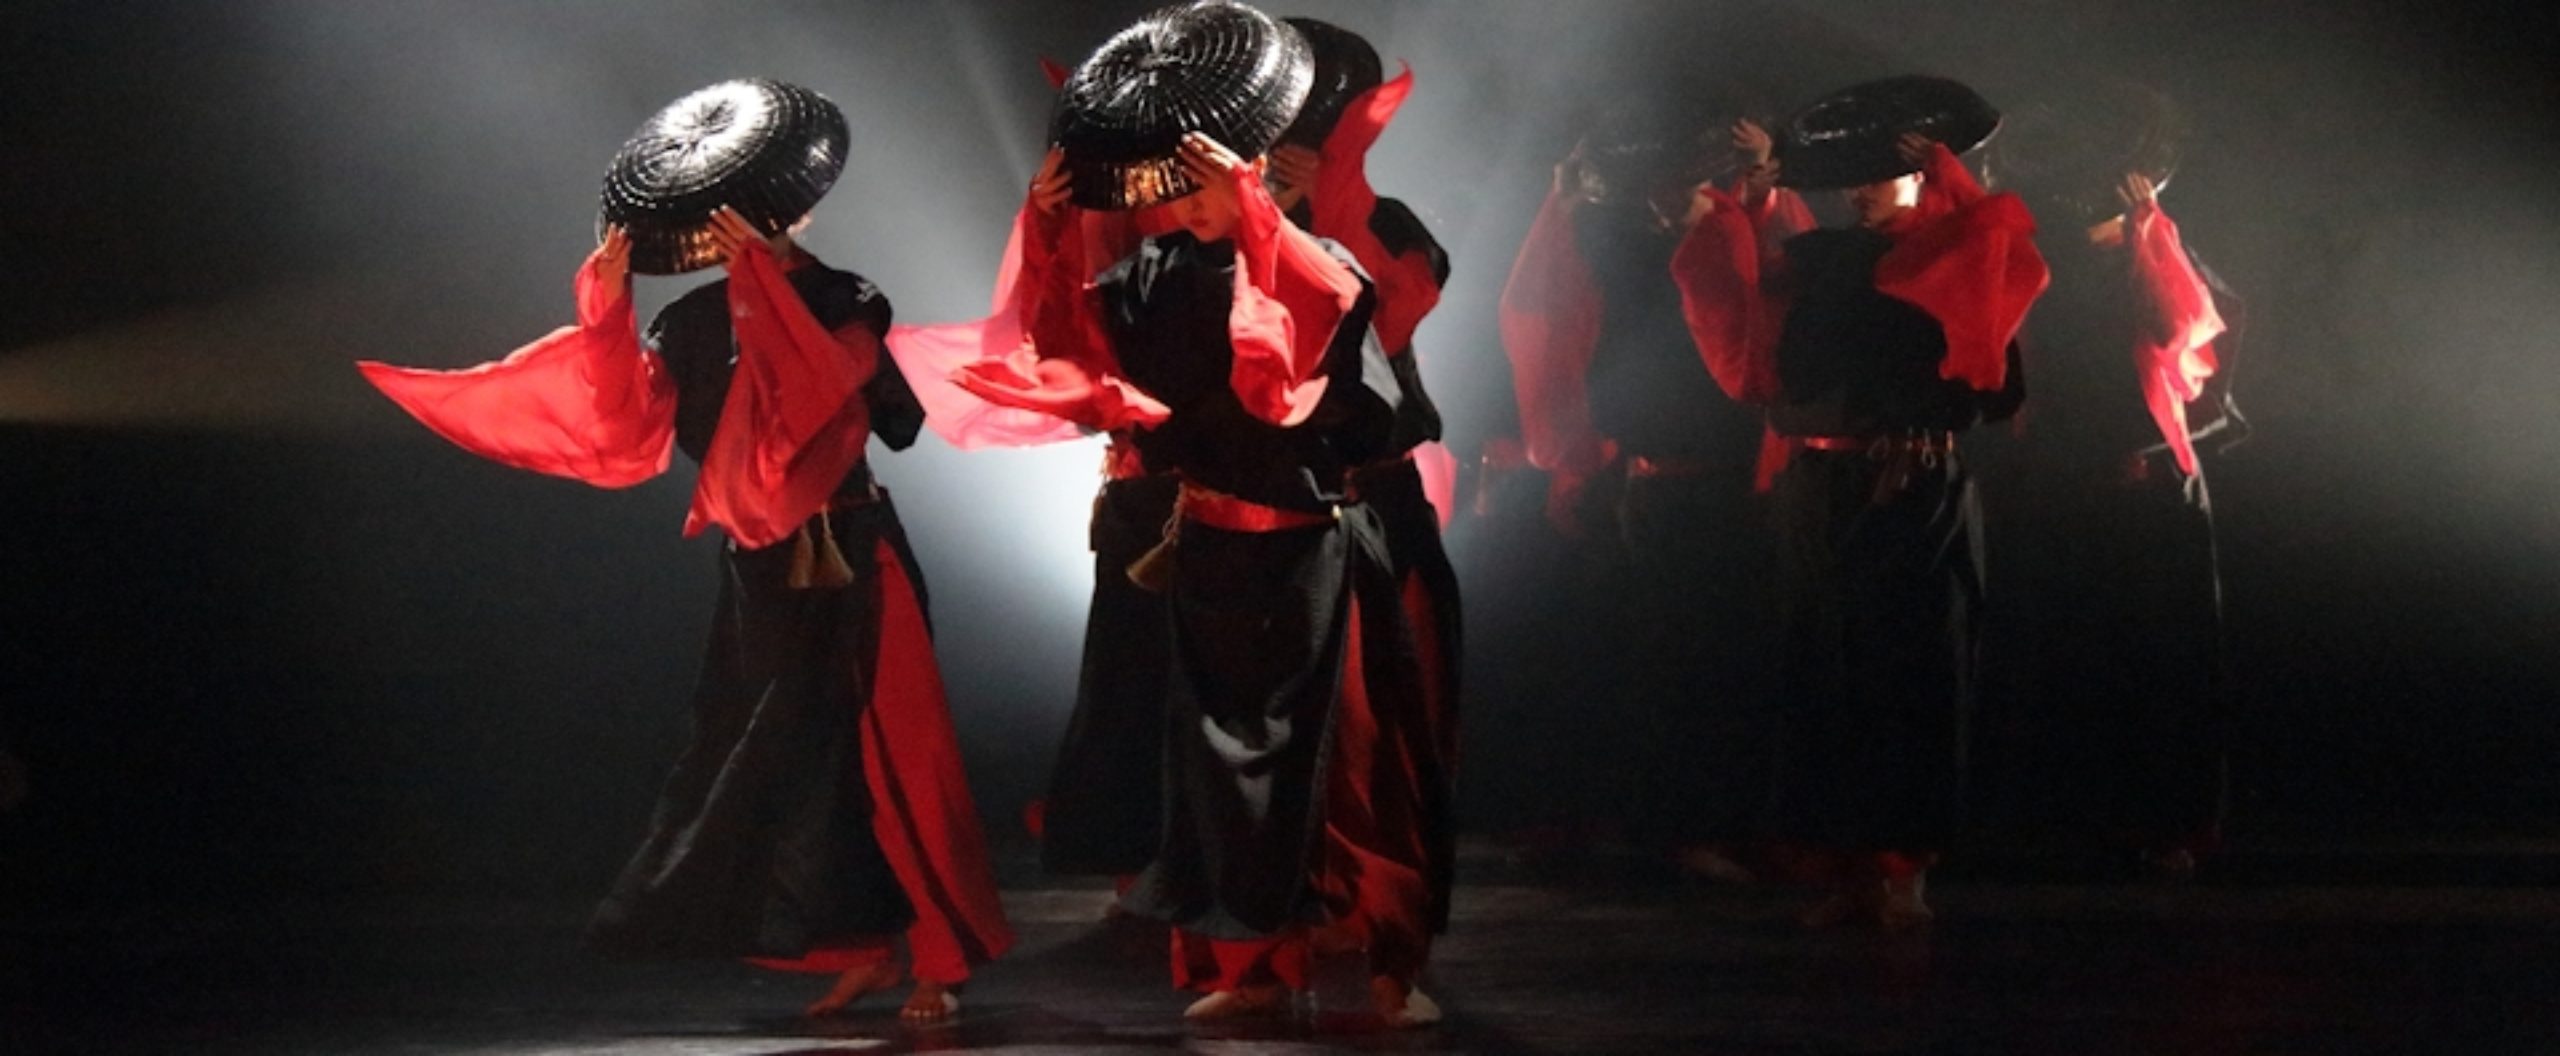 日本の美を音と踊りで描くエンターテイメント集団